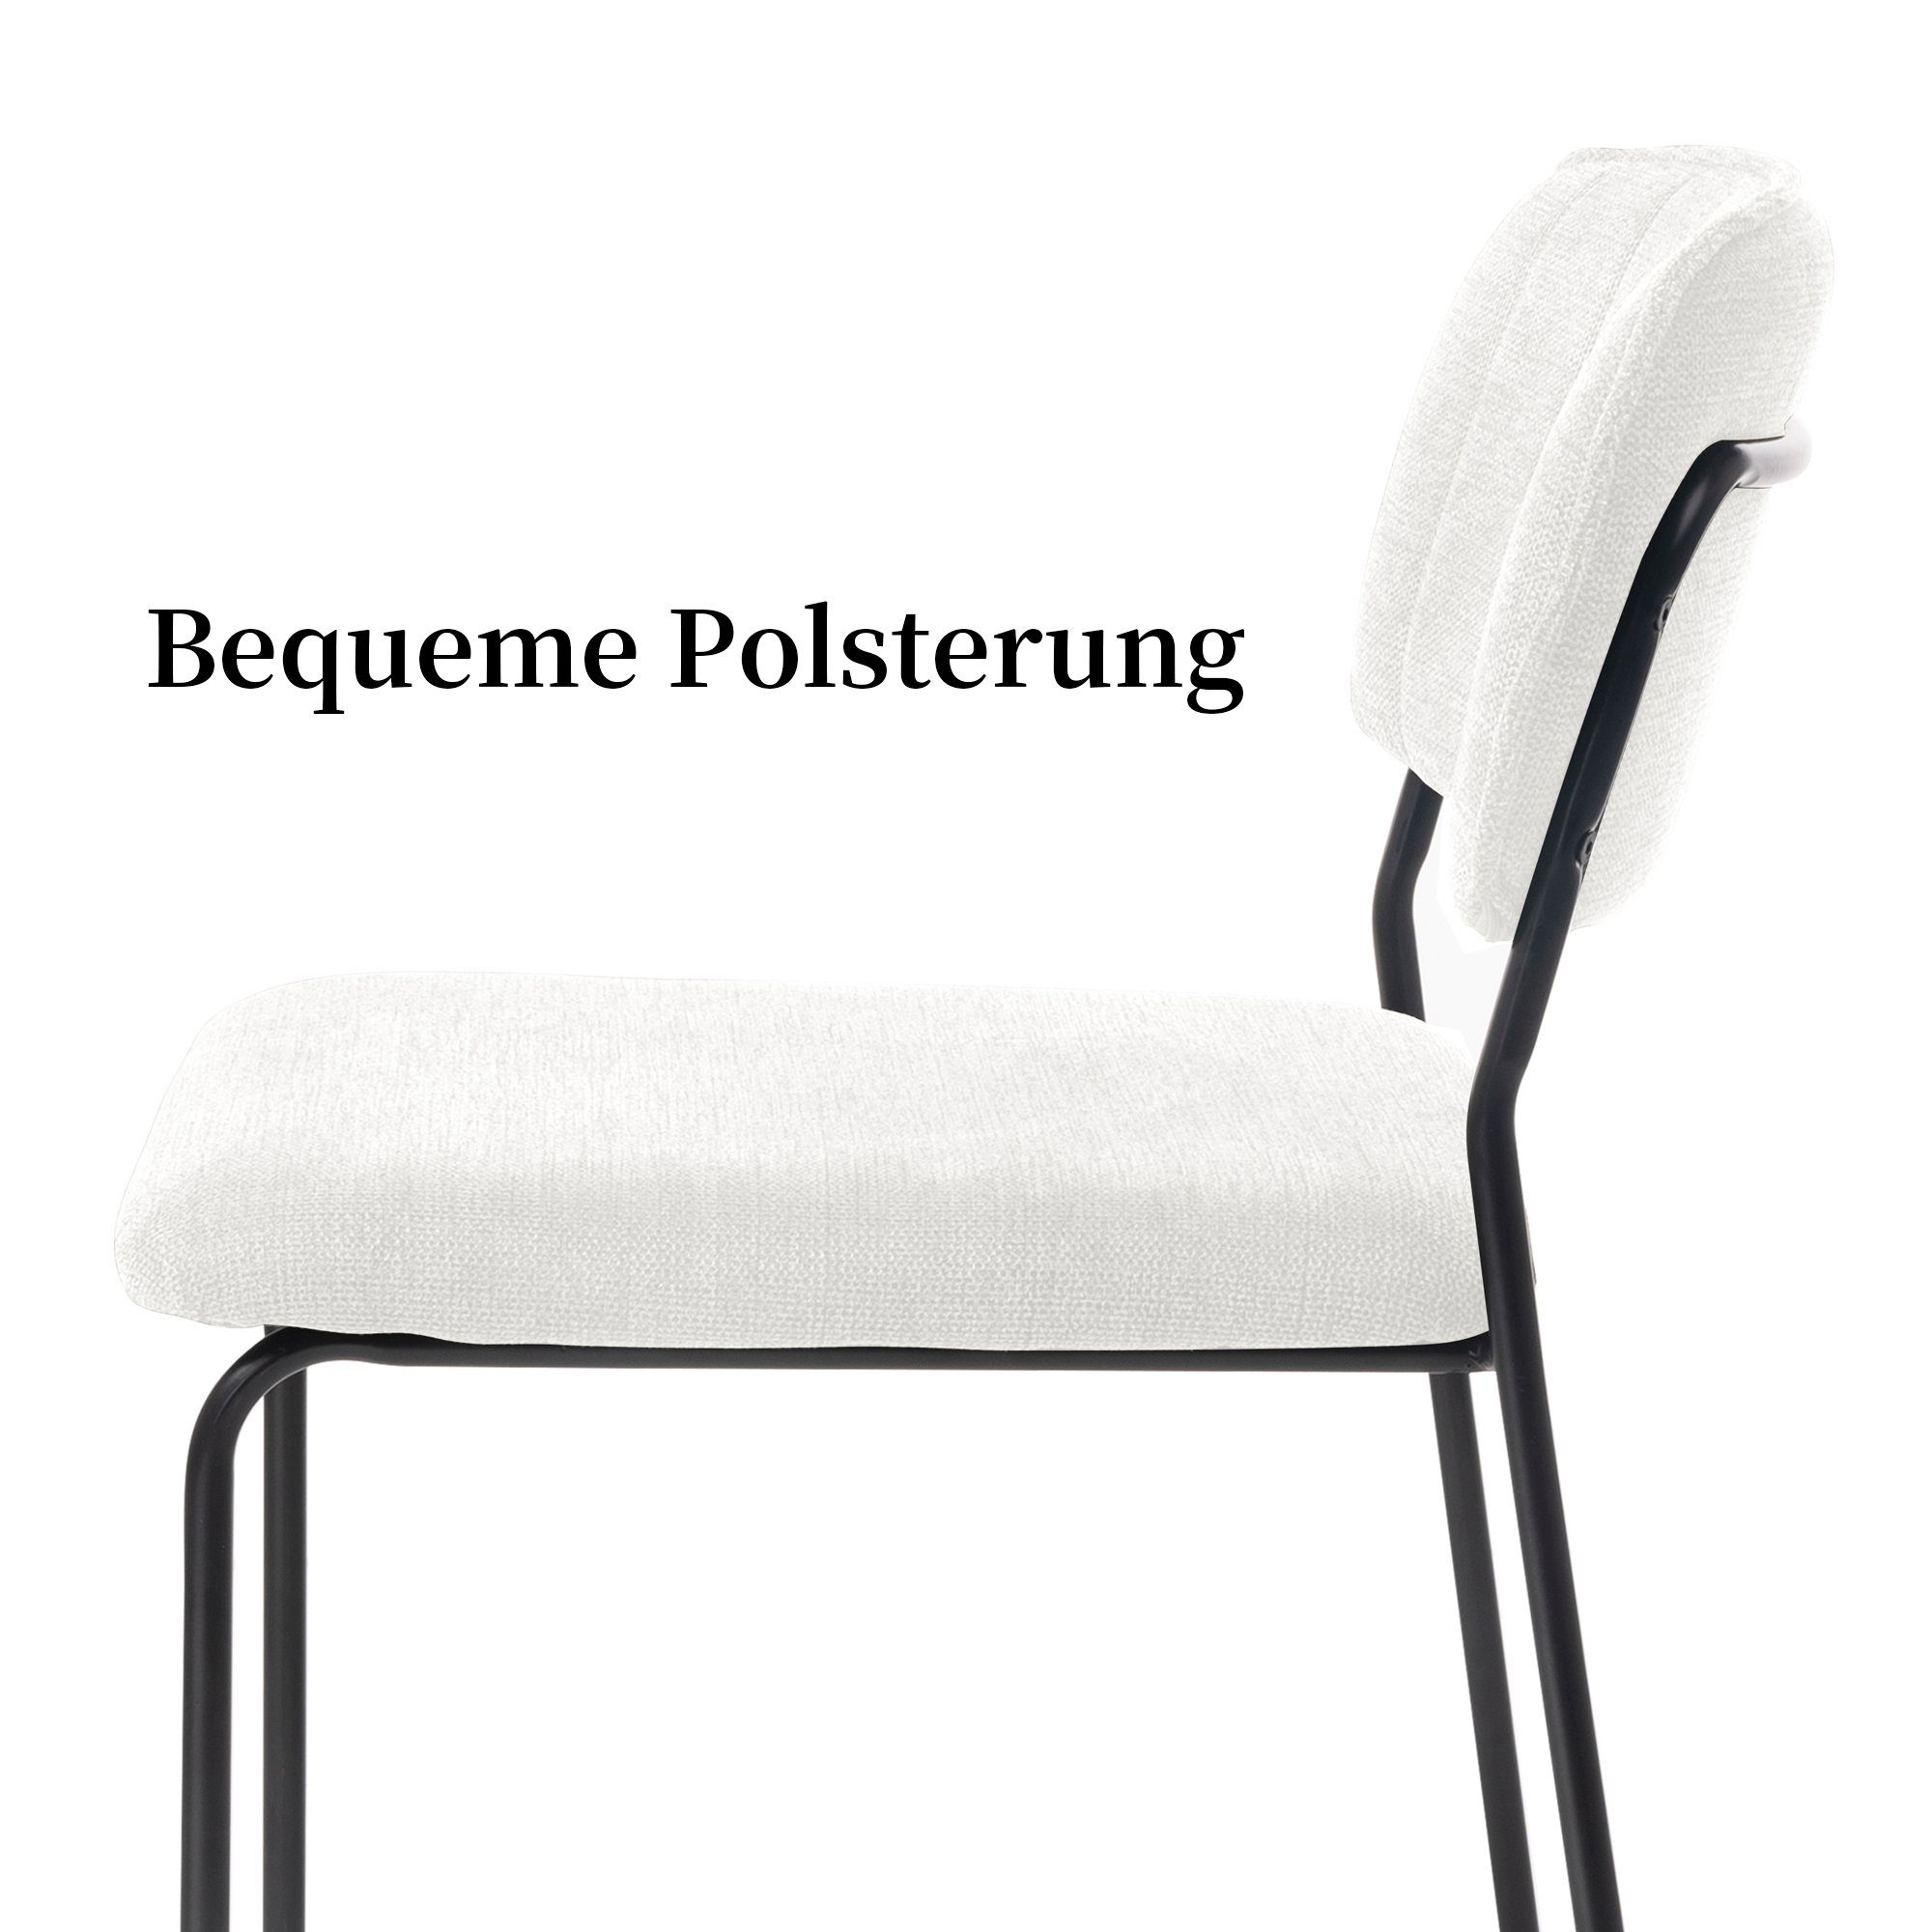 kg belastbar 120 stühle Stuhl Set, Industriedesign, esstisch Esszimmerstuhl Metallbeine, 4er stühle, modernes Set), Weiß bis Küchenstühle Zedelmaier esszimmer, (4er